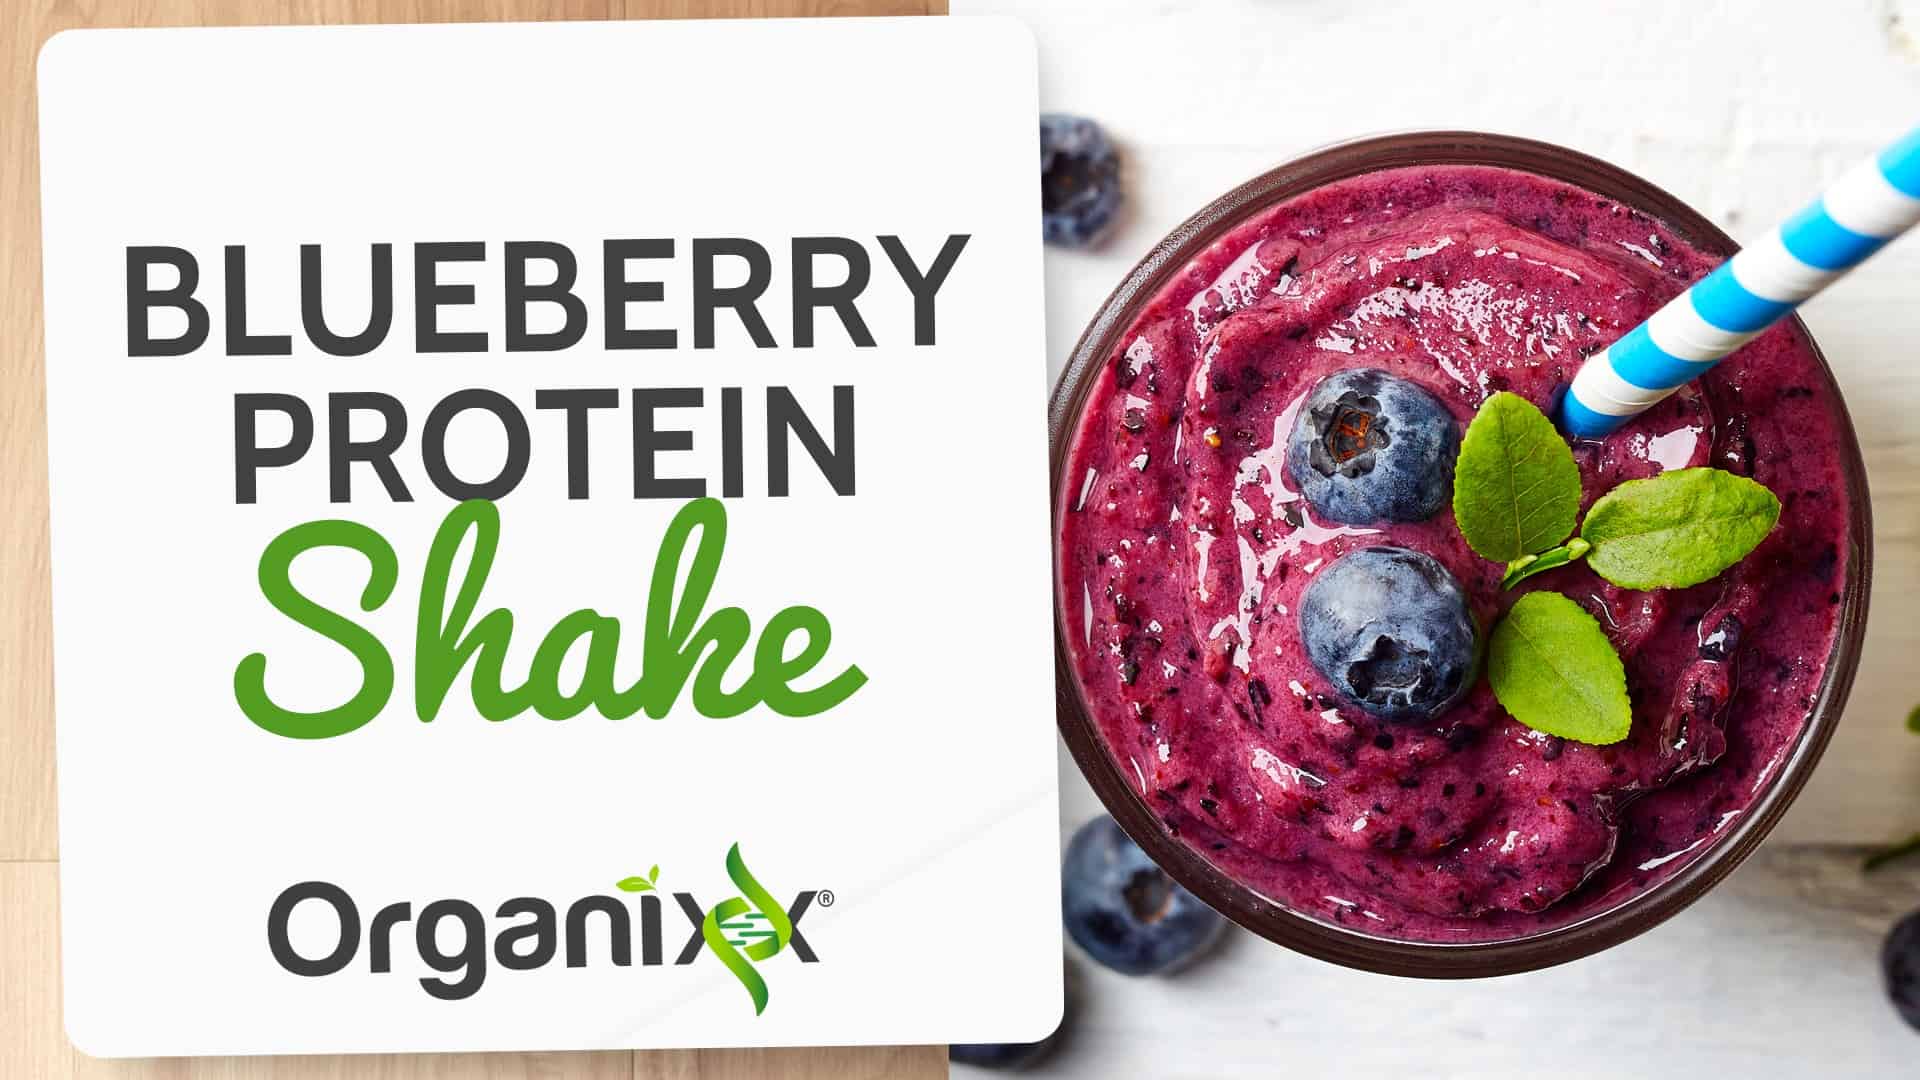 Blueberry Protein Shake